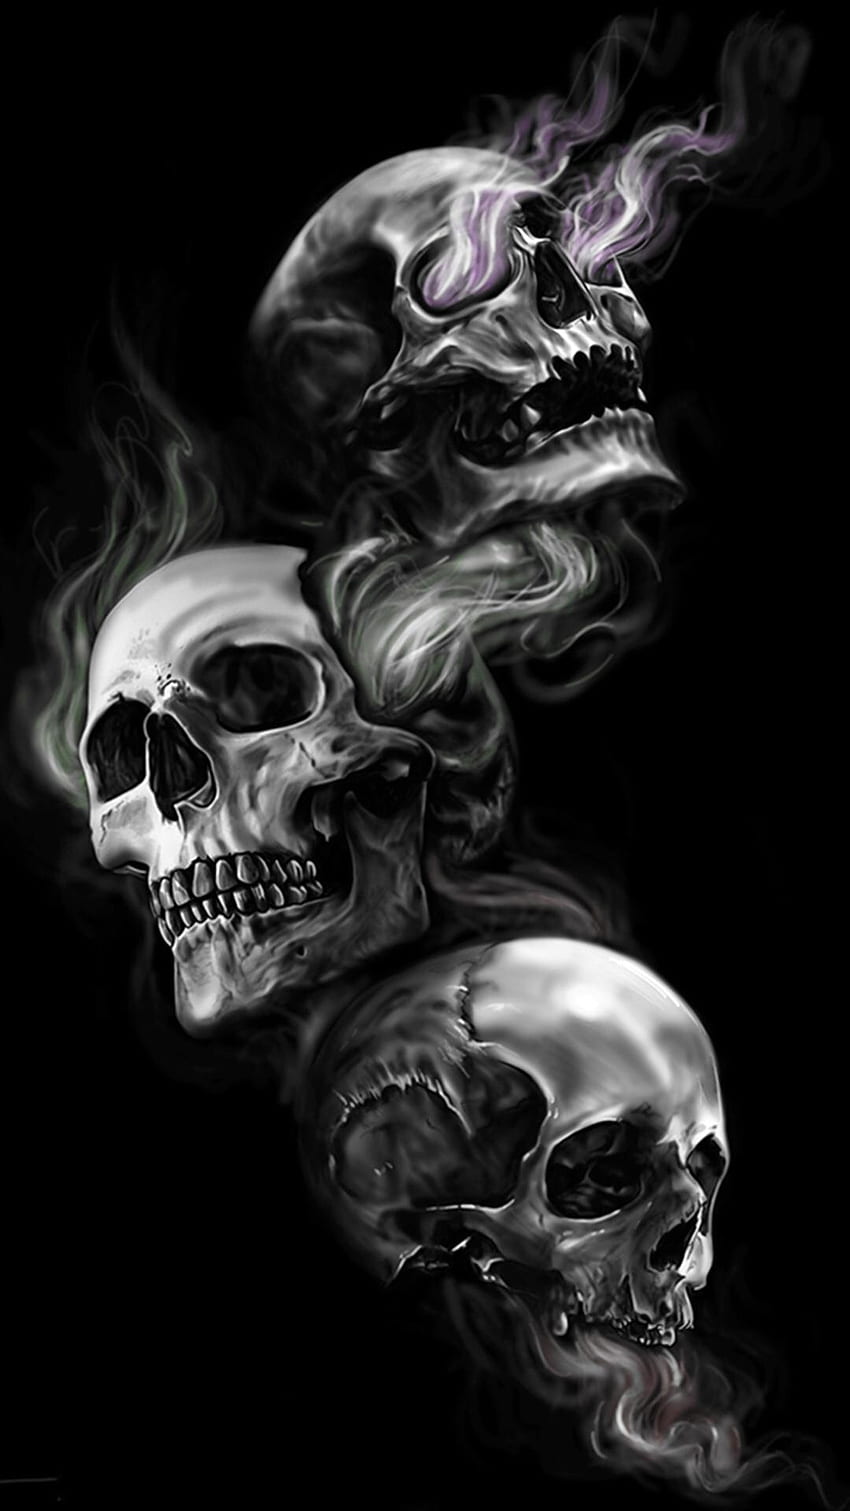 Demon Skull Devil Inside Me by Kinse Graphics on Dribbble